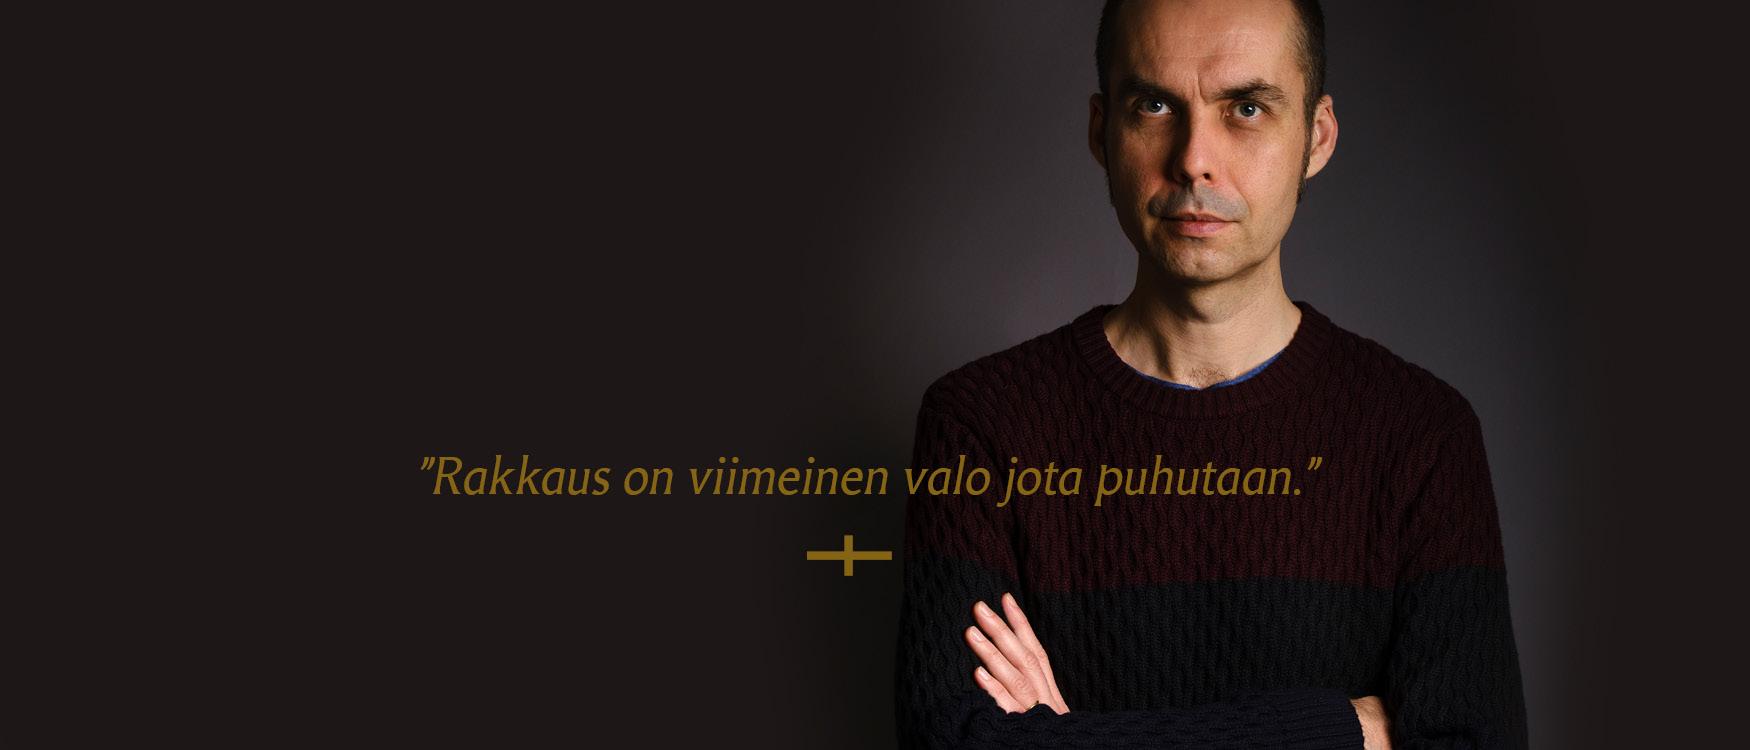 Antti Nylen mustaa taustaaa vasten, päällä teksti: Rakkaus on viimeinen  valo jota puhutaan.